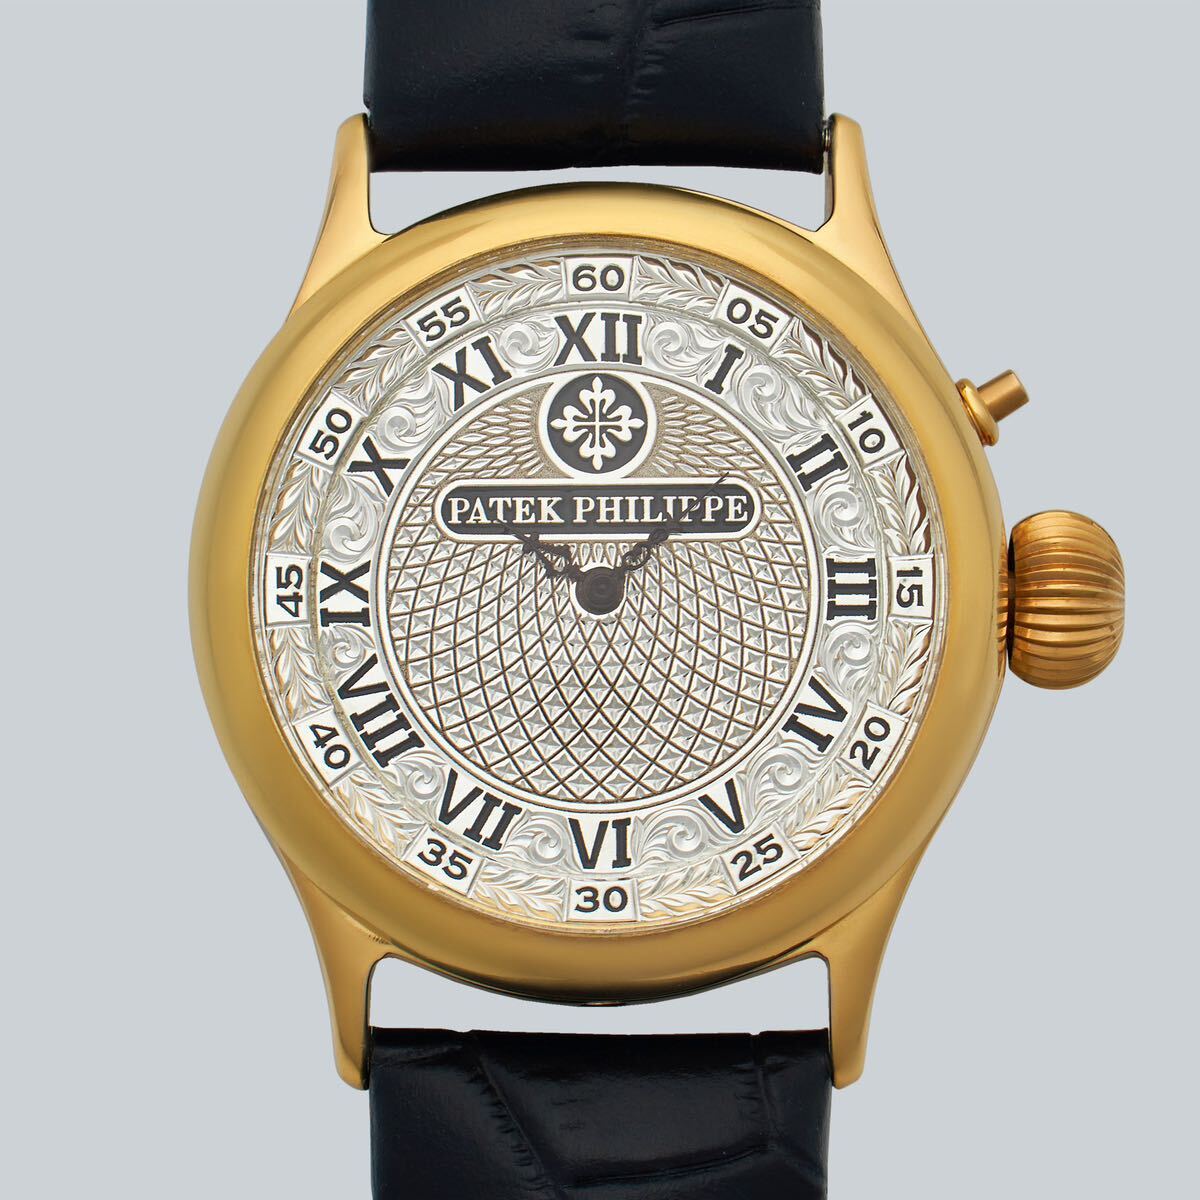 アンティーク Marriage watch Patek Philippe 懐中時計をアレンジした40mmのメンズ腕時計 半年保証 手巻き スケルトン_画像1